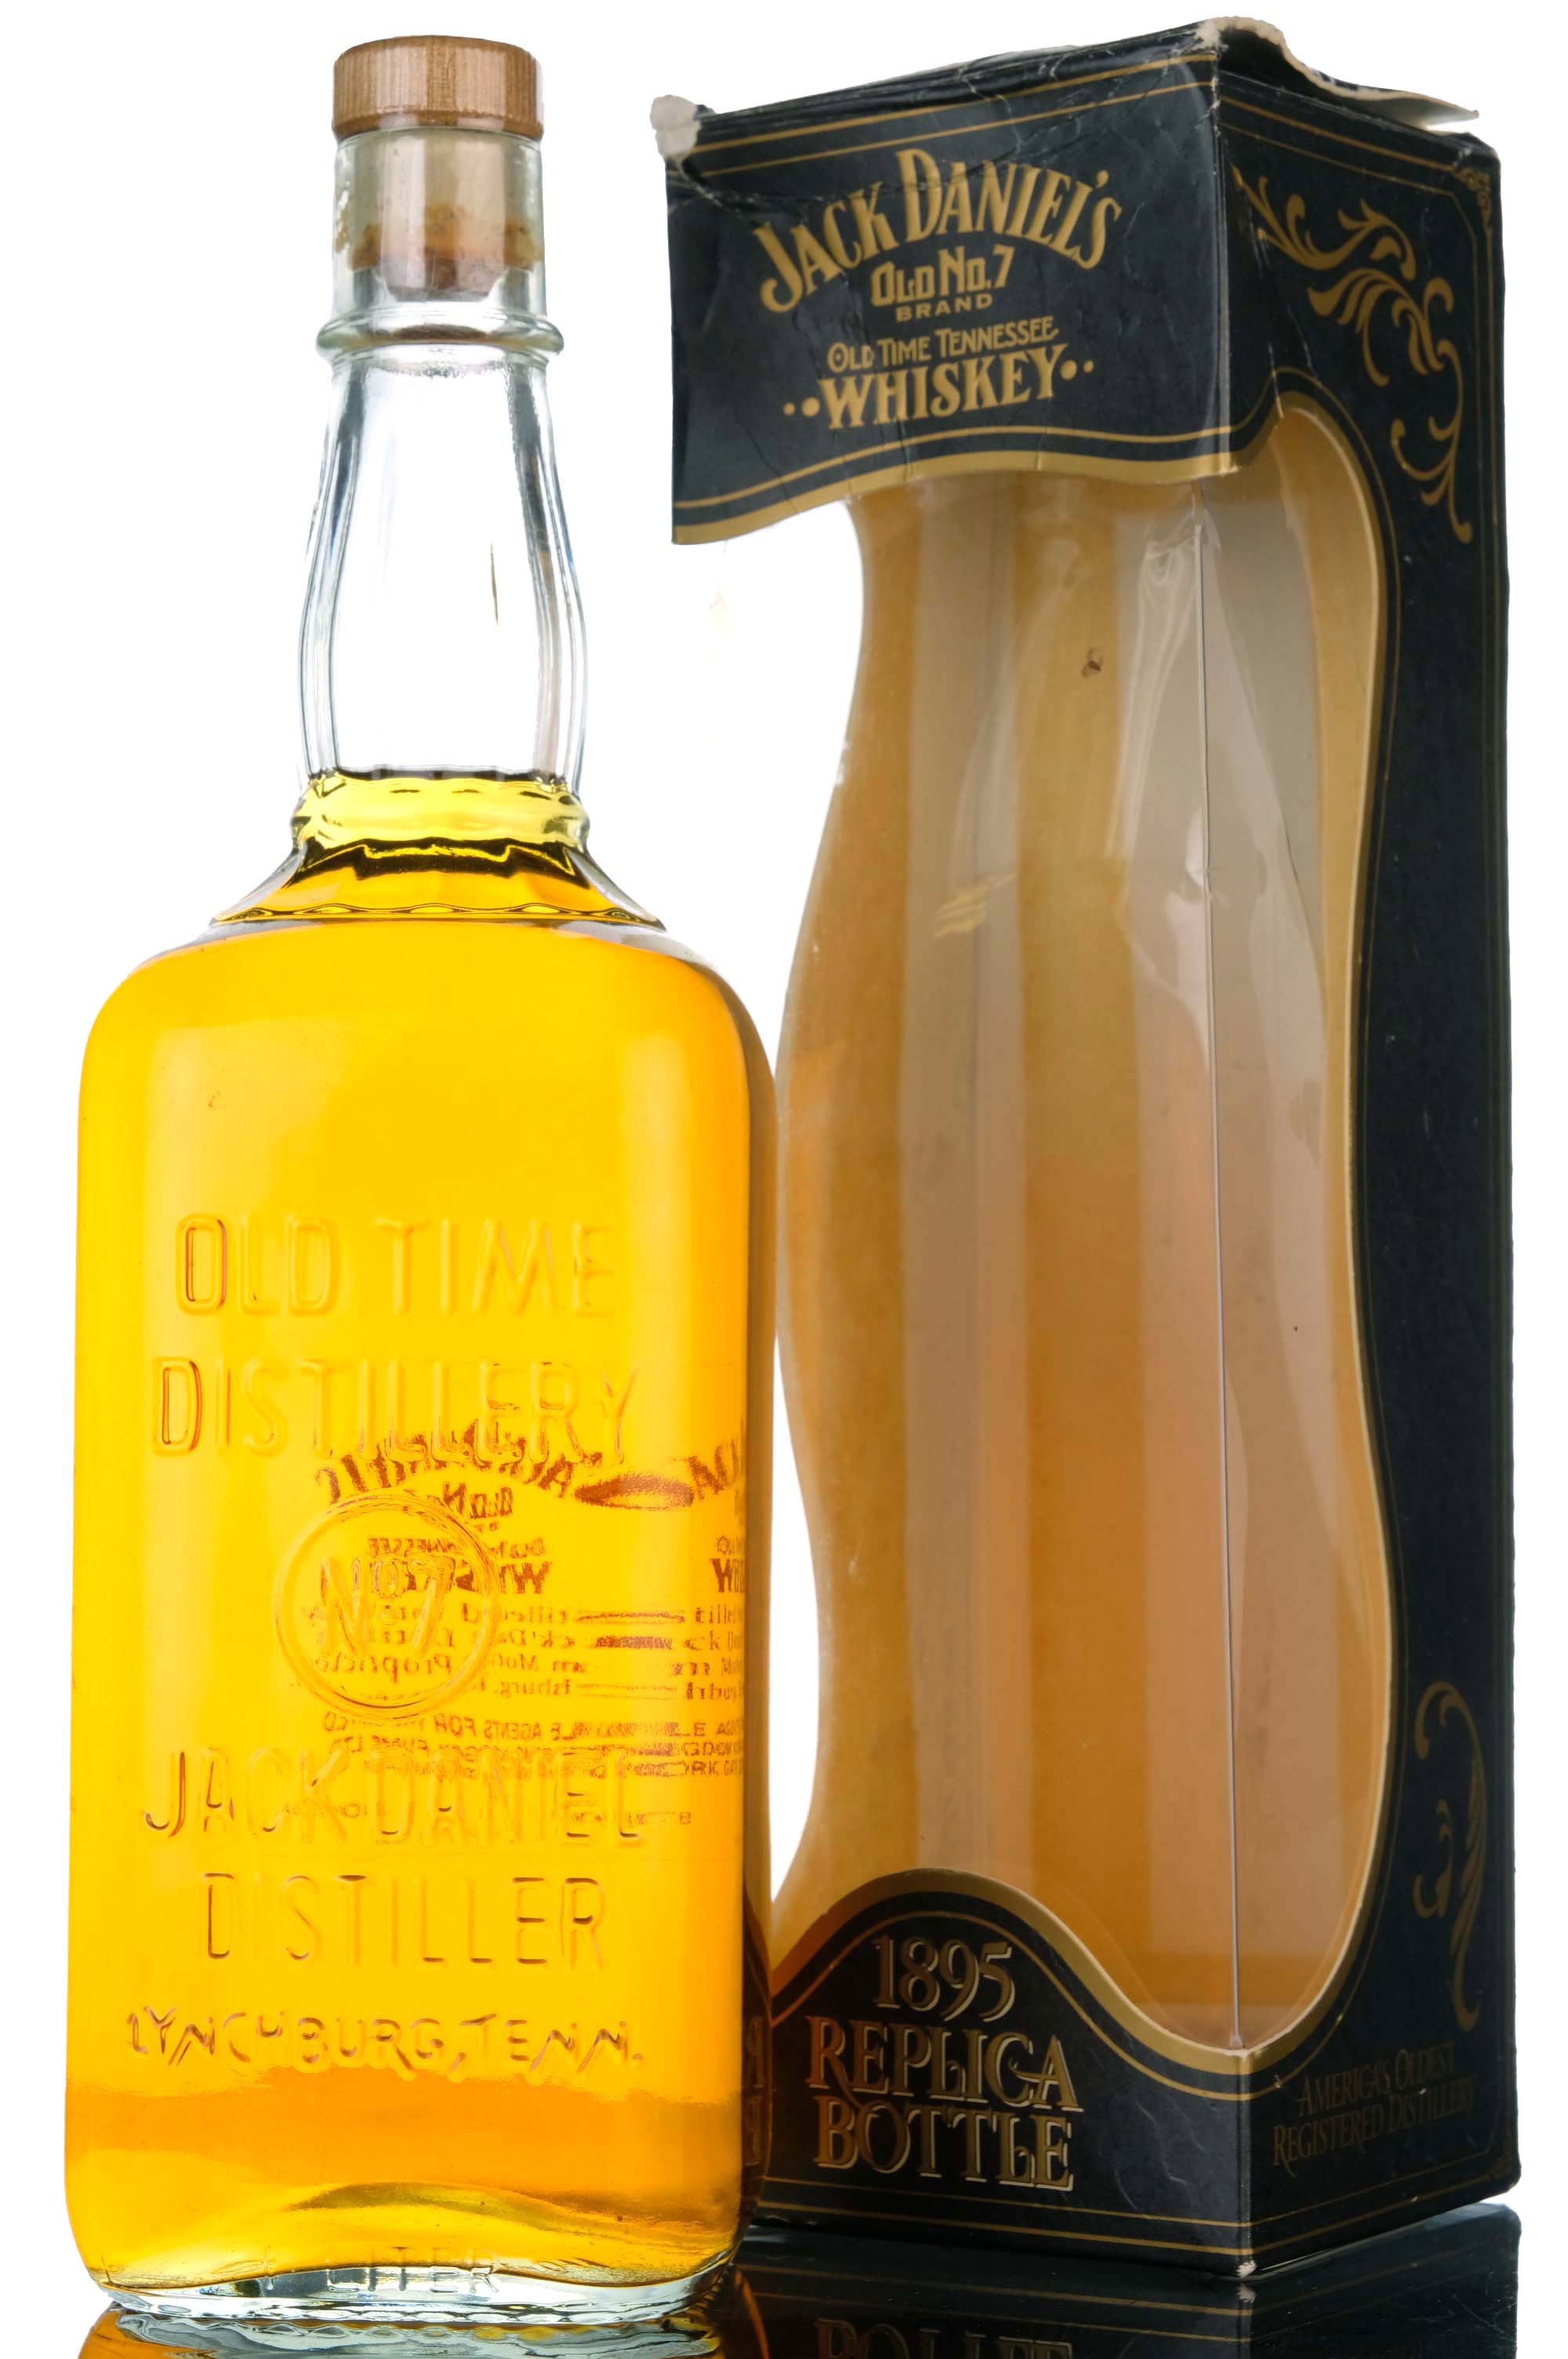 Jack Daniels 1895 Replica Bottle - 1 Litre